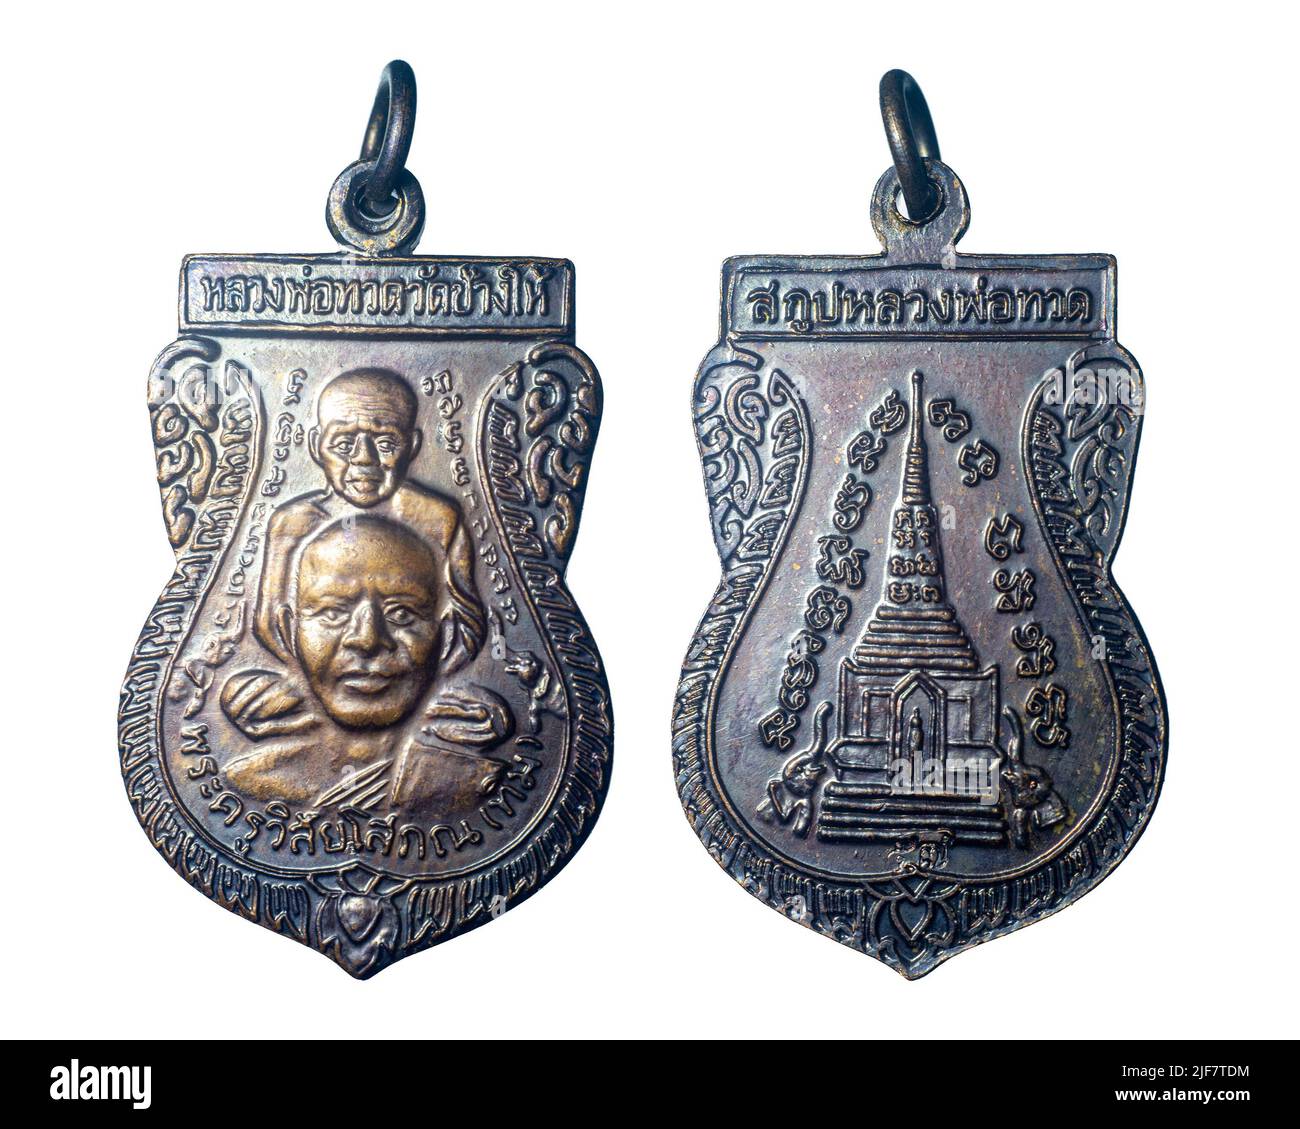 Luang pu Thuat , Amulet de Wat Chang Hai. Province de Pattani, Thaïlande. Amulet qui apporte la chance et la protection contre le danger. Banque D'Images